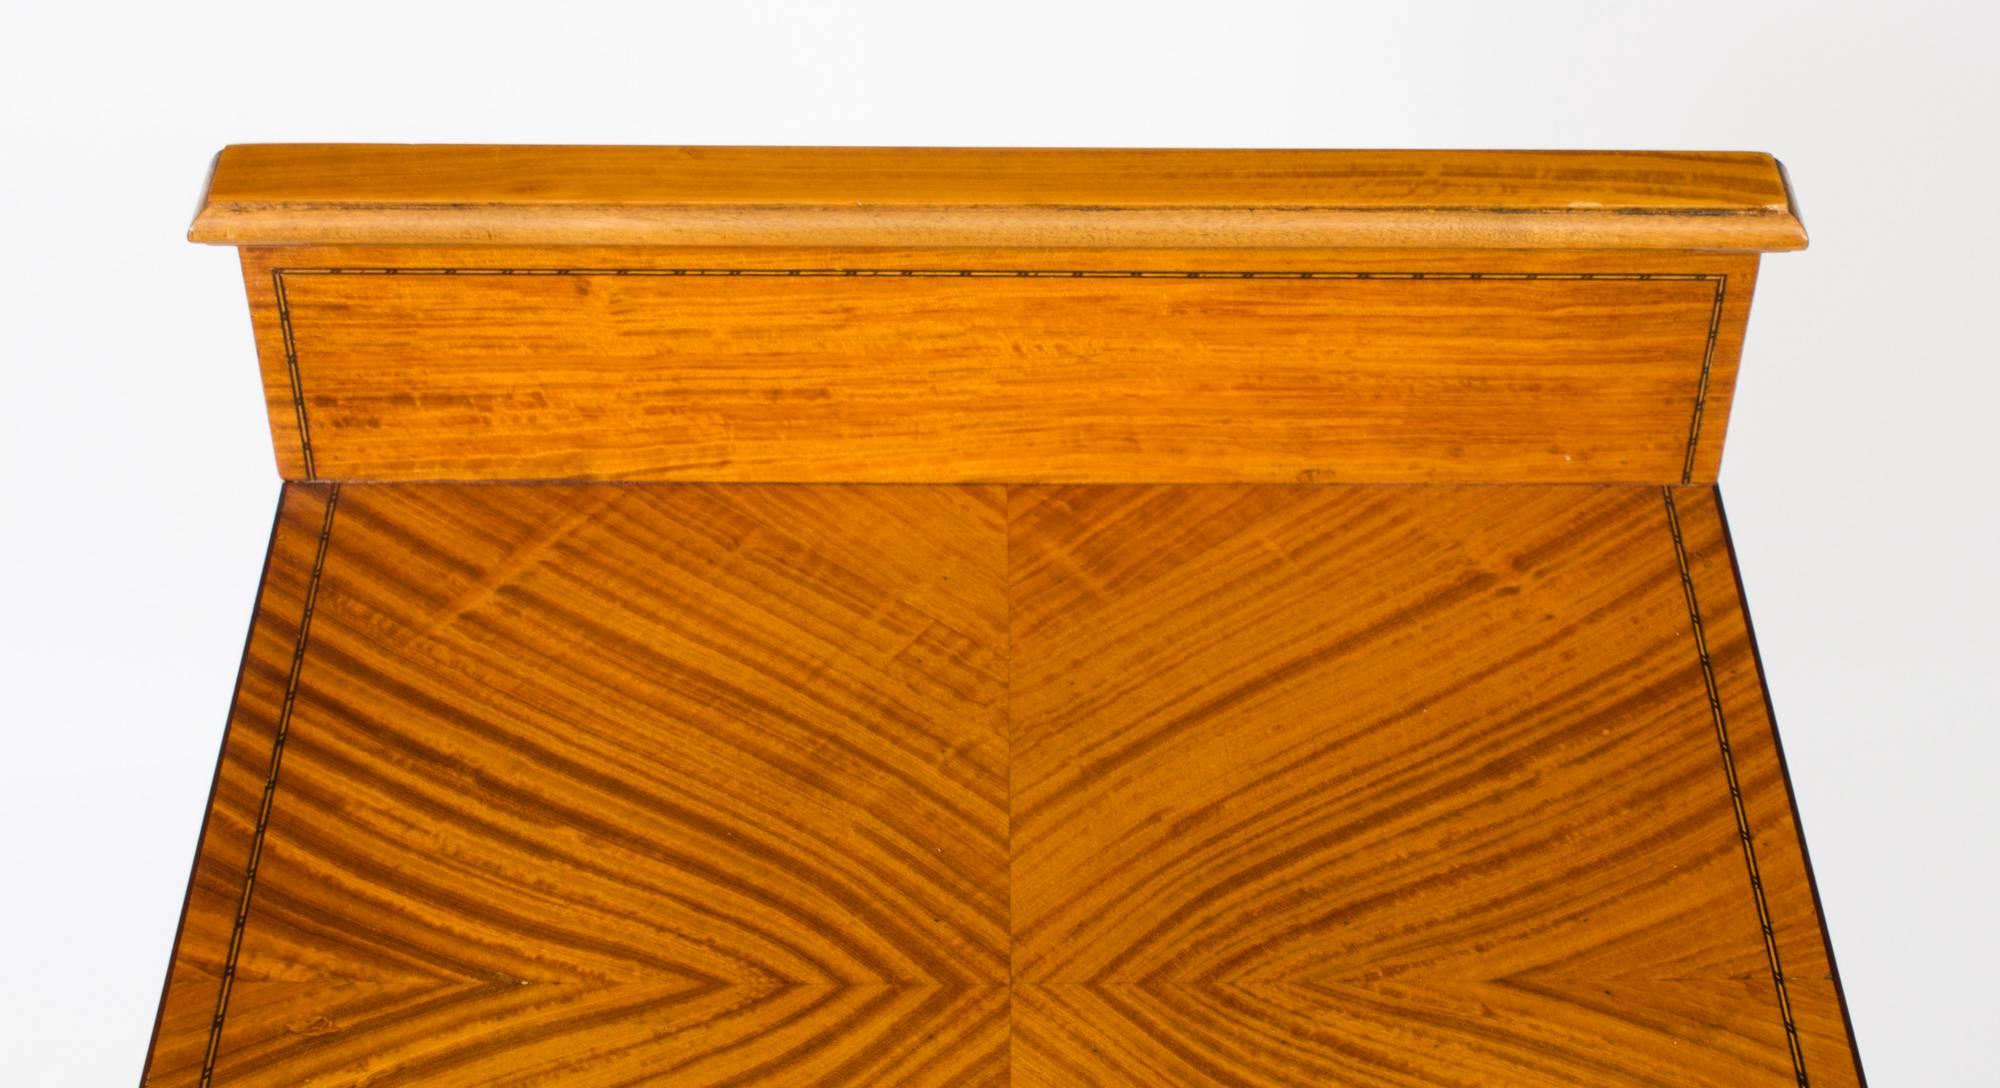 Ein schöner antiker viktorianischer Nachttisch aus Satinholz mit Bogenfront, datiert um 1880.

Dieser prächtige antike Schrank zeichnet sich durch eine attraktive Intarsienverzierung aus Ebenholz und Buchsbaum aus.

Der Schrank hat eine nützliche